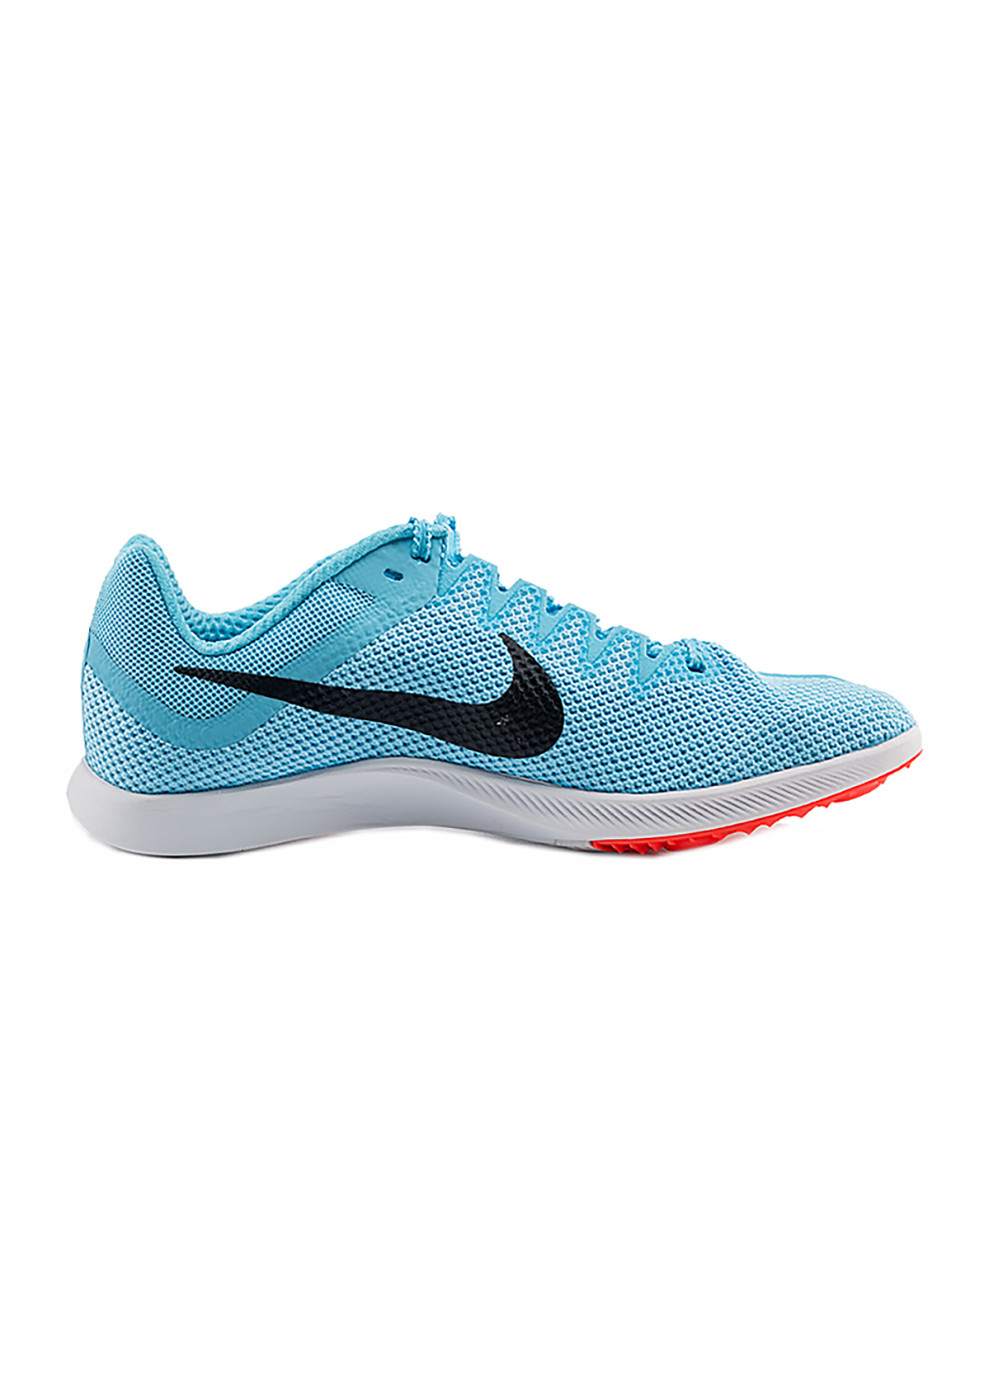 Голубые демисезонные мужские кроссовки zoom rival distance голубой Nike